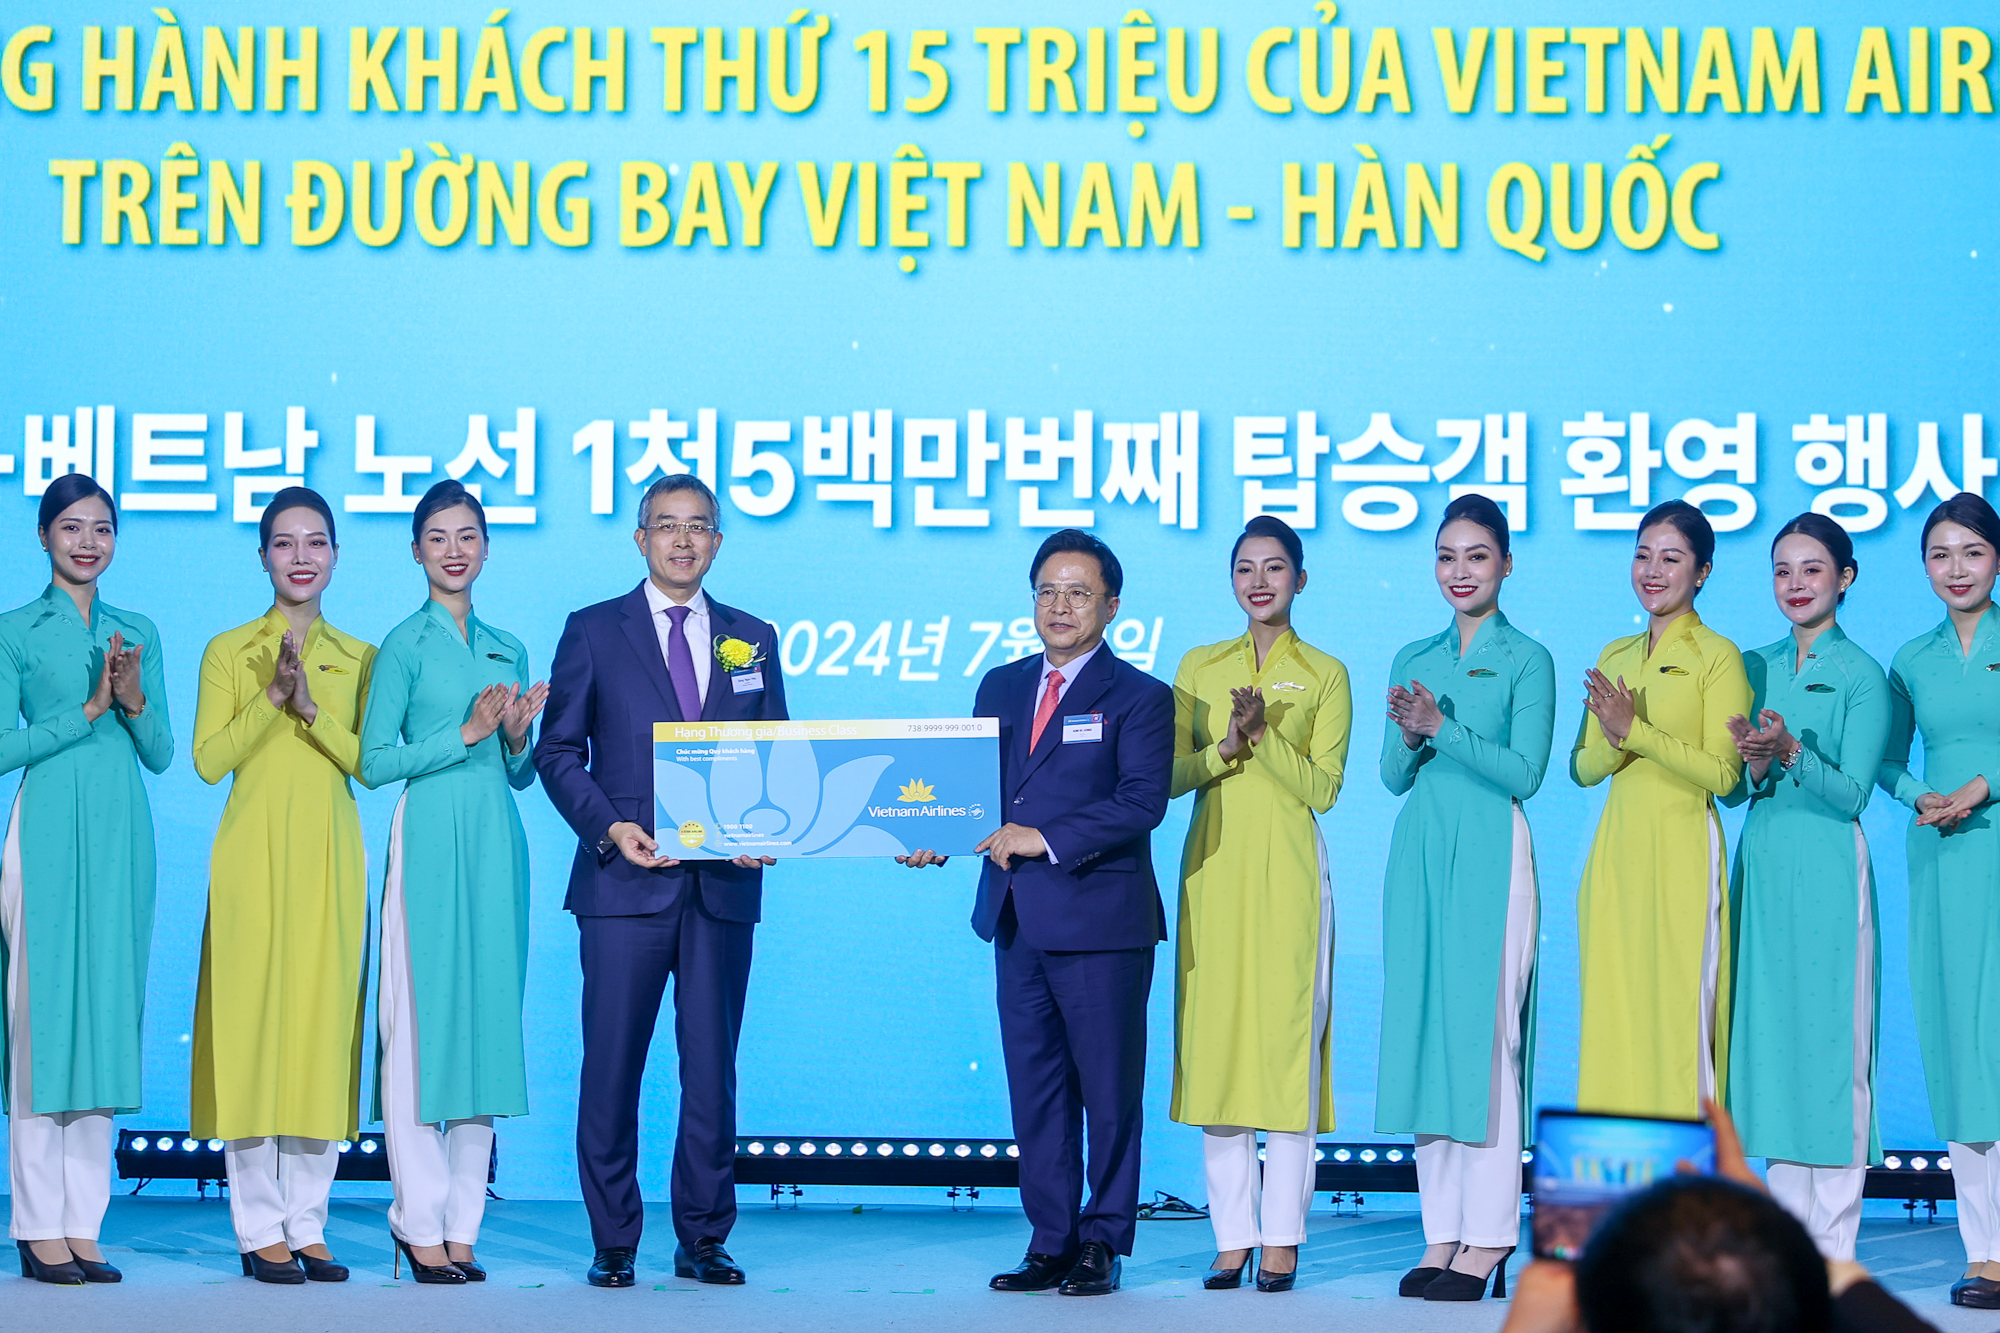 Chào đón hành khách thứ 15 triệu giữa Việt Nam và Hàn Quốc của hãng hàng không Vietnam Airlines - Ảnh: VGP/Nhật Bắc